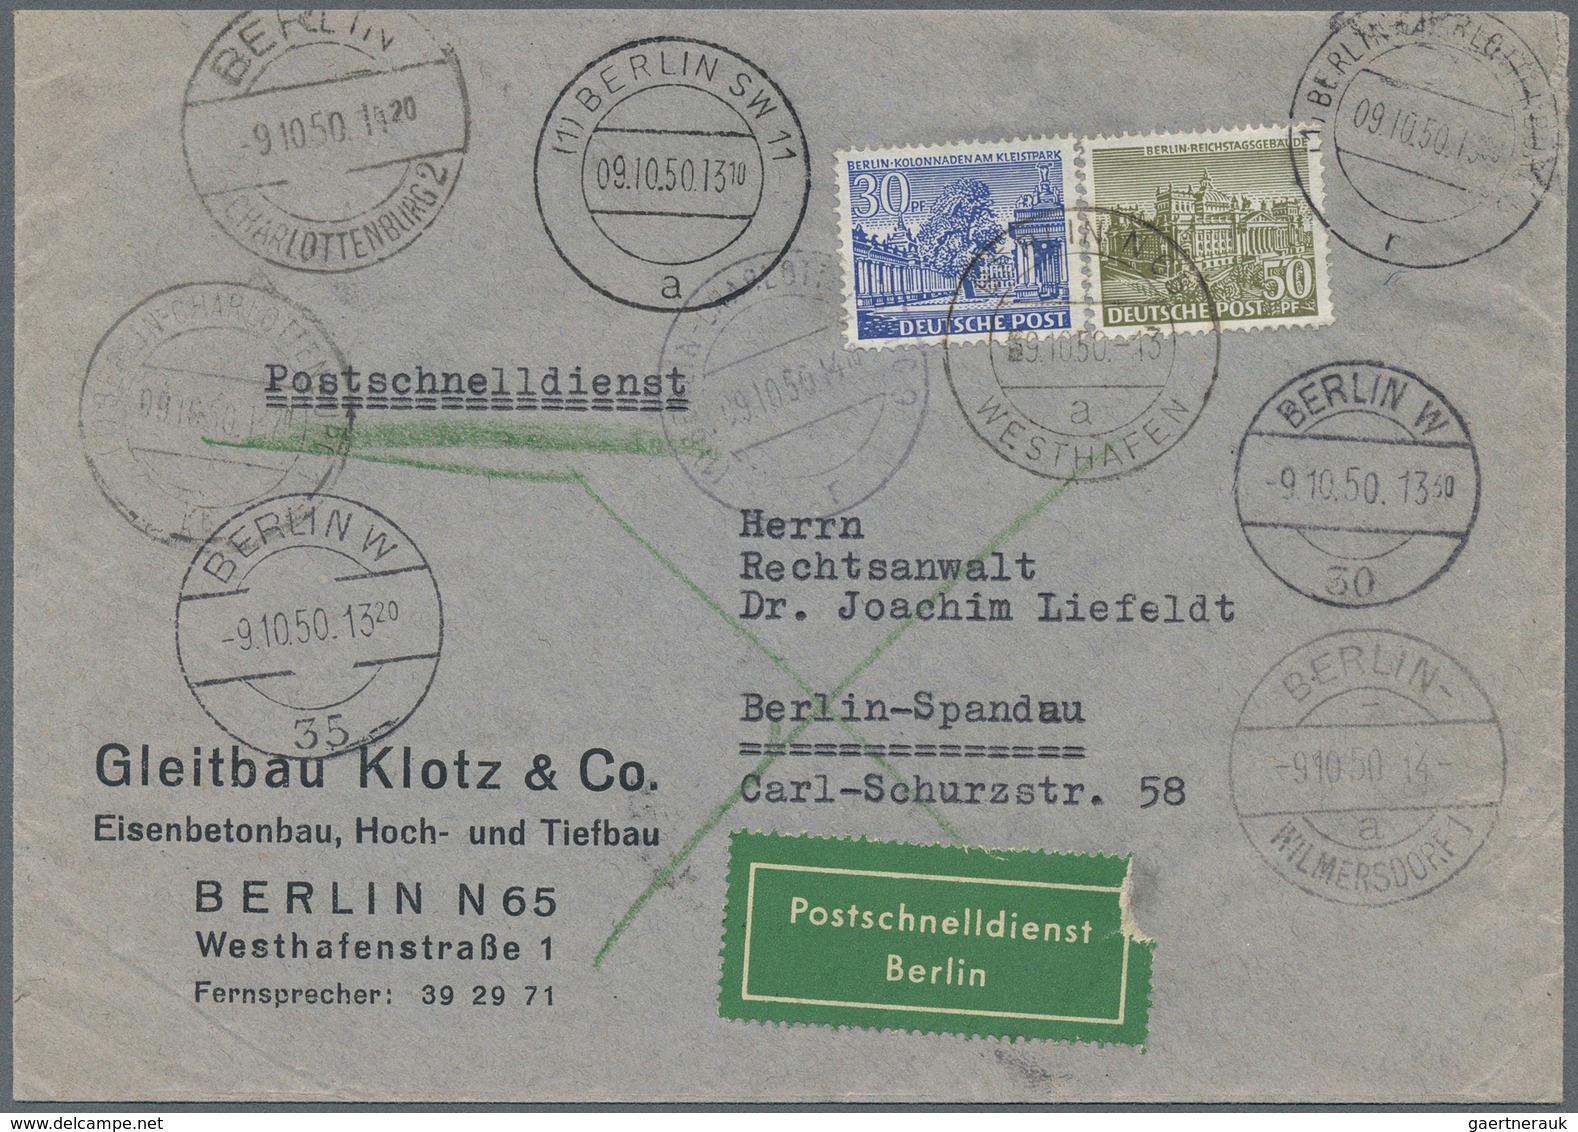 Berlin - Postschnelldienst: 30 U. 50 Pf. Bauten Zusammen Auf Postschnelldienstbf. Von Berlin N 65 We - Briefe U. Dokumente